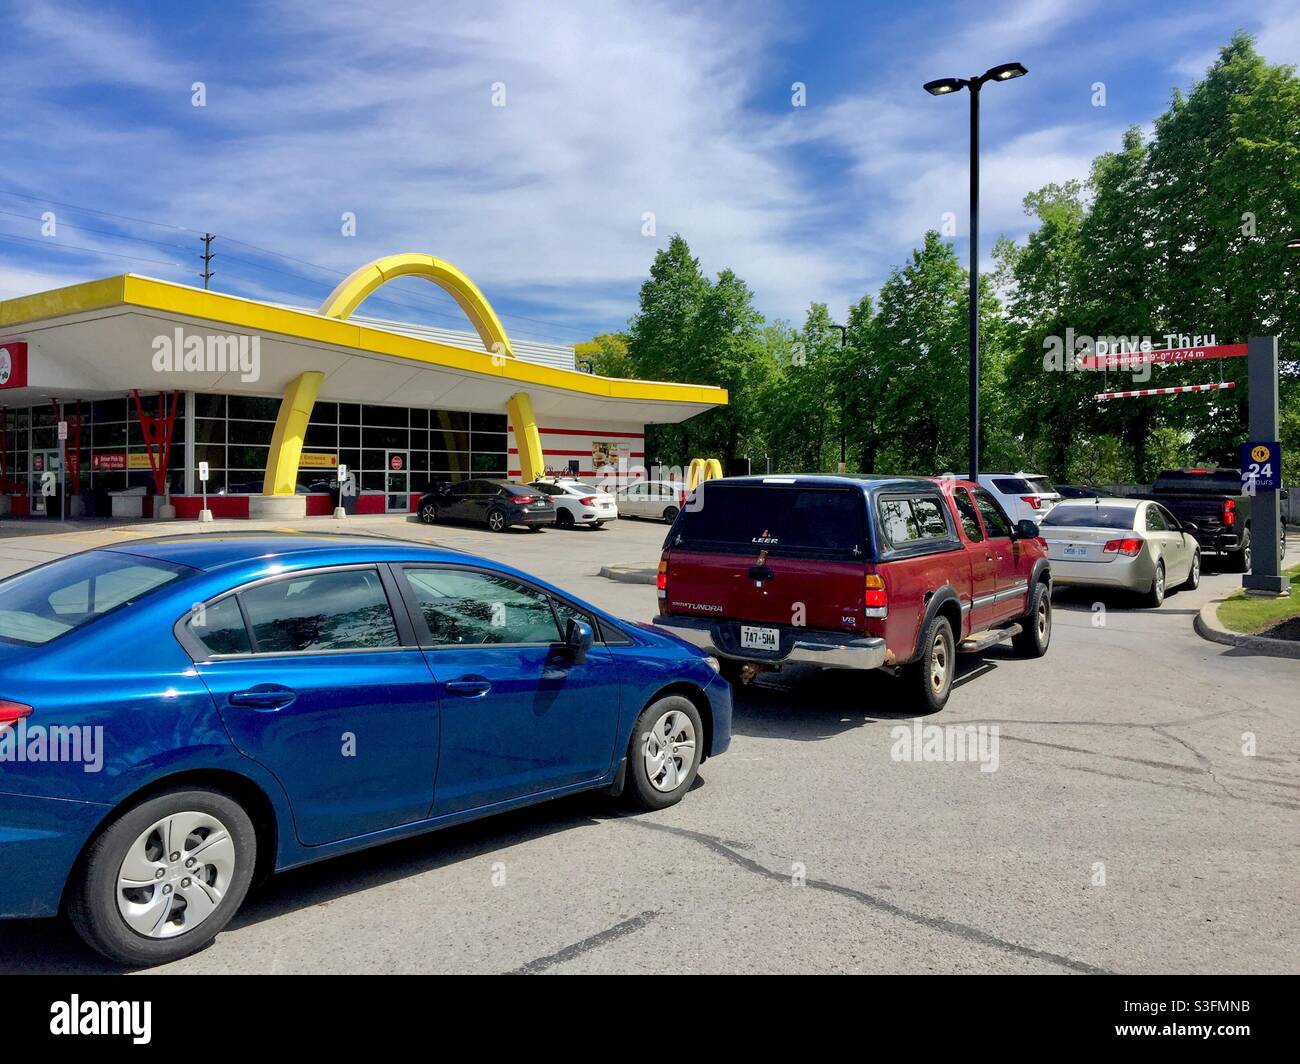 Gamme au McDonalds Drive, Ontario, Canada. Restauration rapide, file d'attente lente aux Golden Arches. Les restrictions Covid augmentent la demande d'aliments sans contact. Banque D'Images